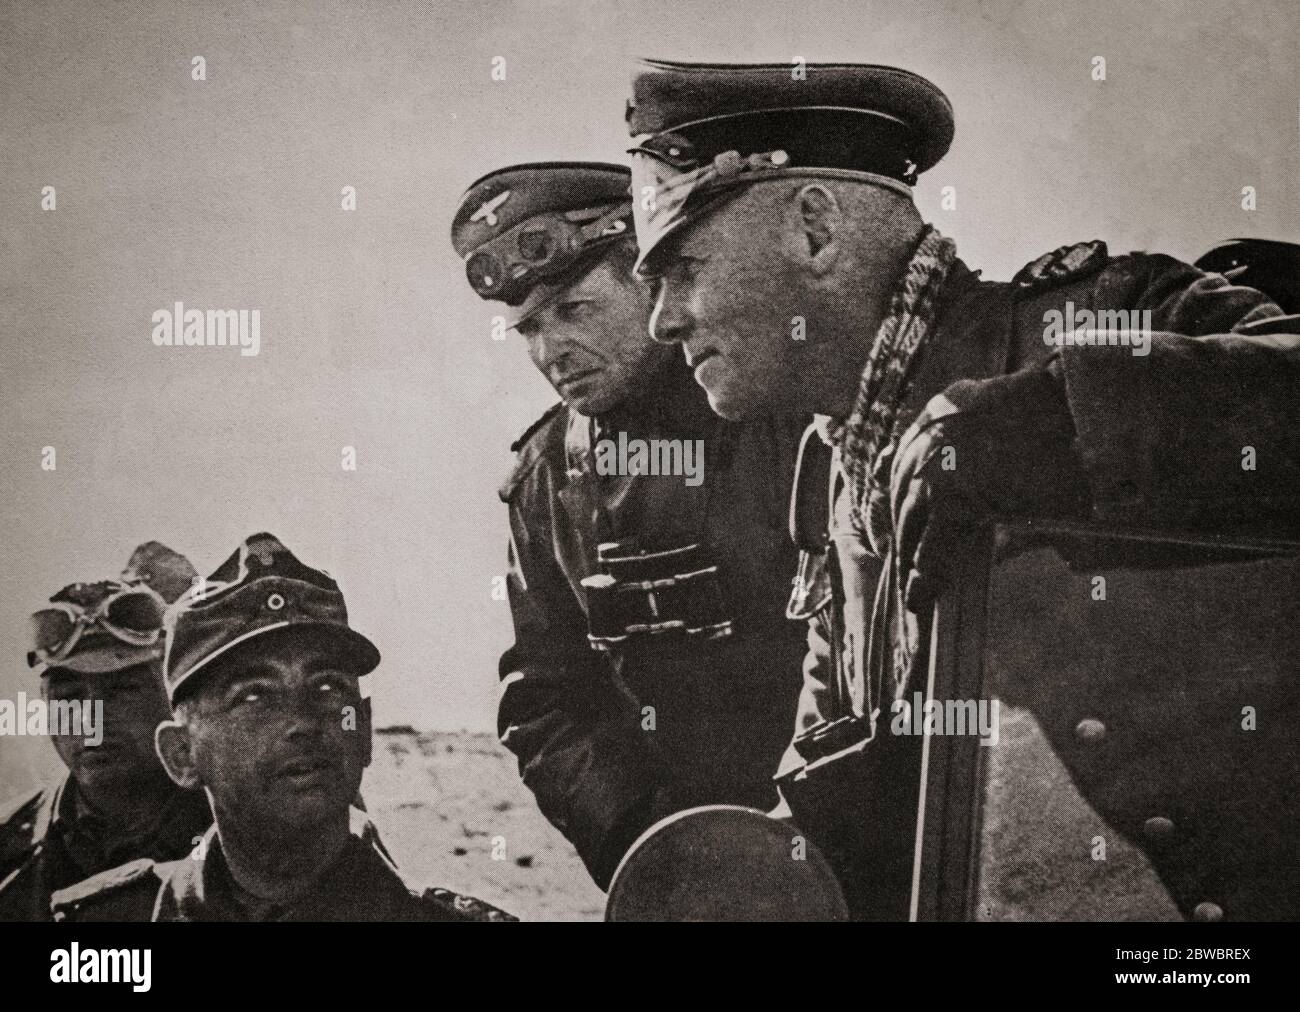 Il maresciallo Erwin Rommel (1891-1944), un generale tedesco conosciuto come la volpe del deserto. Durante la seconda guerra mondiale, egli servì nella Wehrmacht (forze armate) della Germania nazista, quando si distinse come uno dei più abili comandanti della guerra, durante la campagna nordafricana. Foto Stock